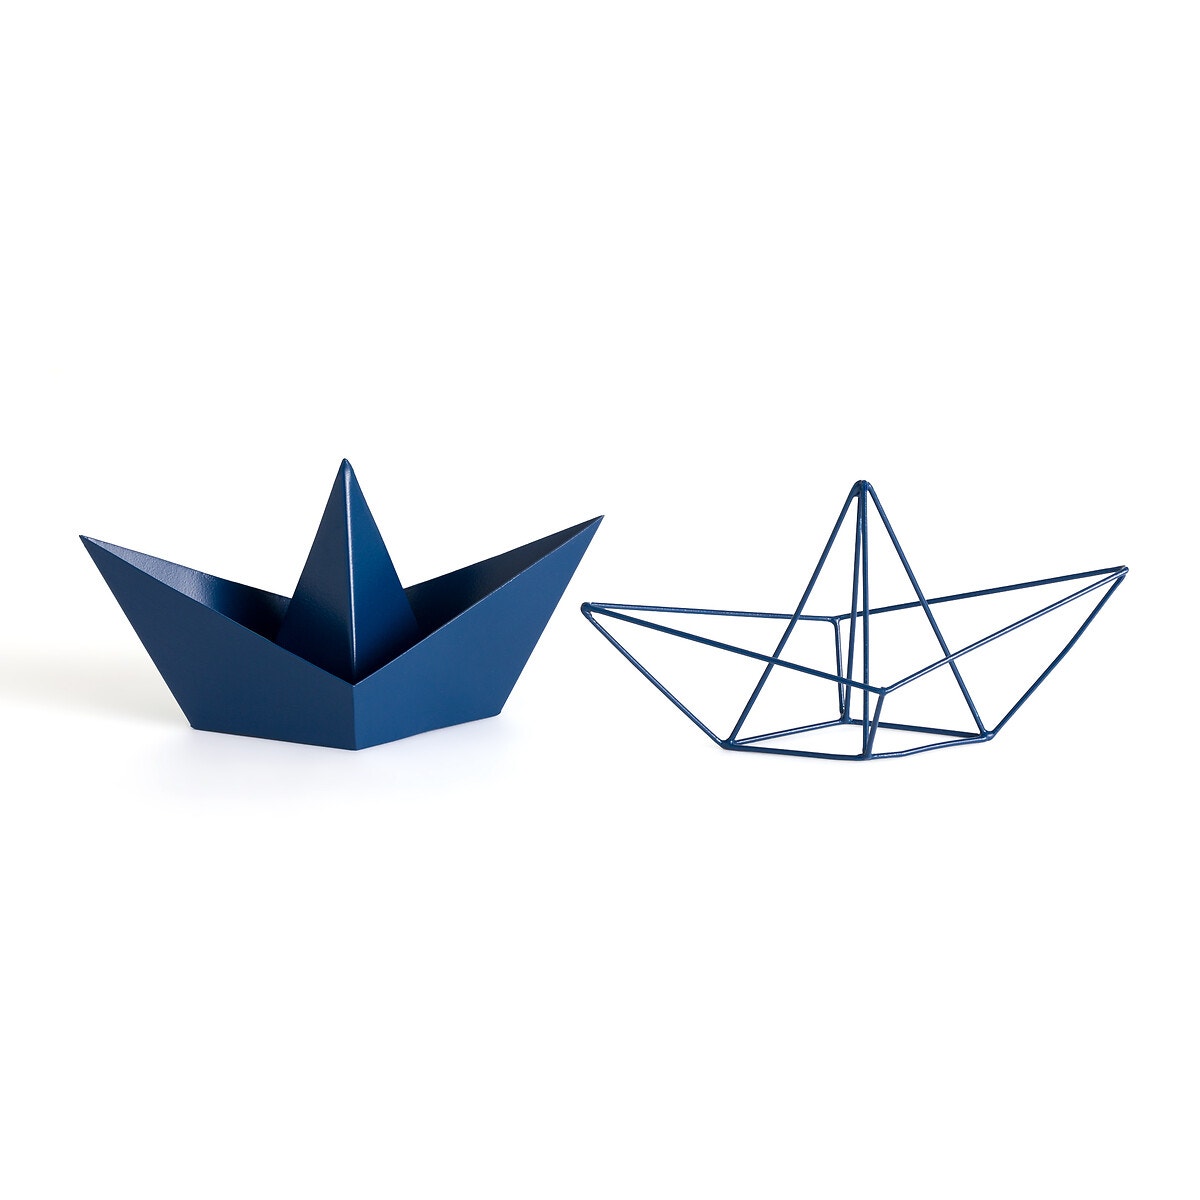 Μεταλλικές διακοσμητικές βάρκες Origami, Gayoma (σετ των 2)